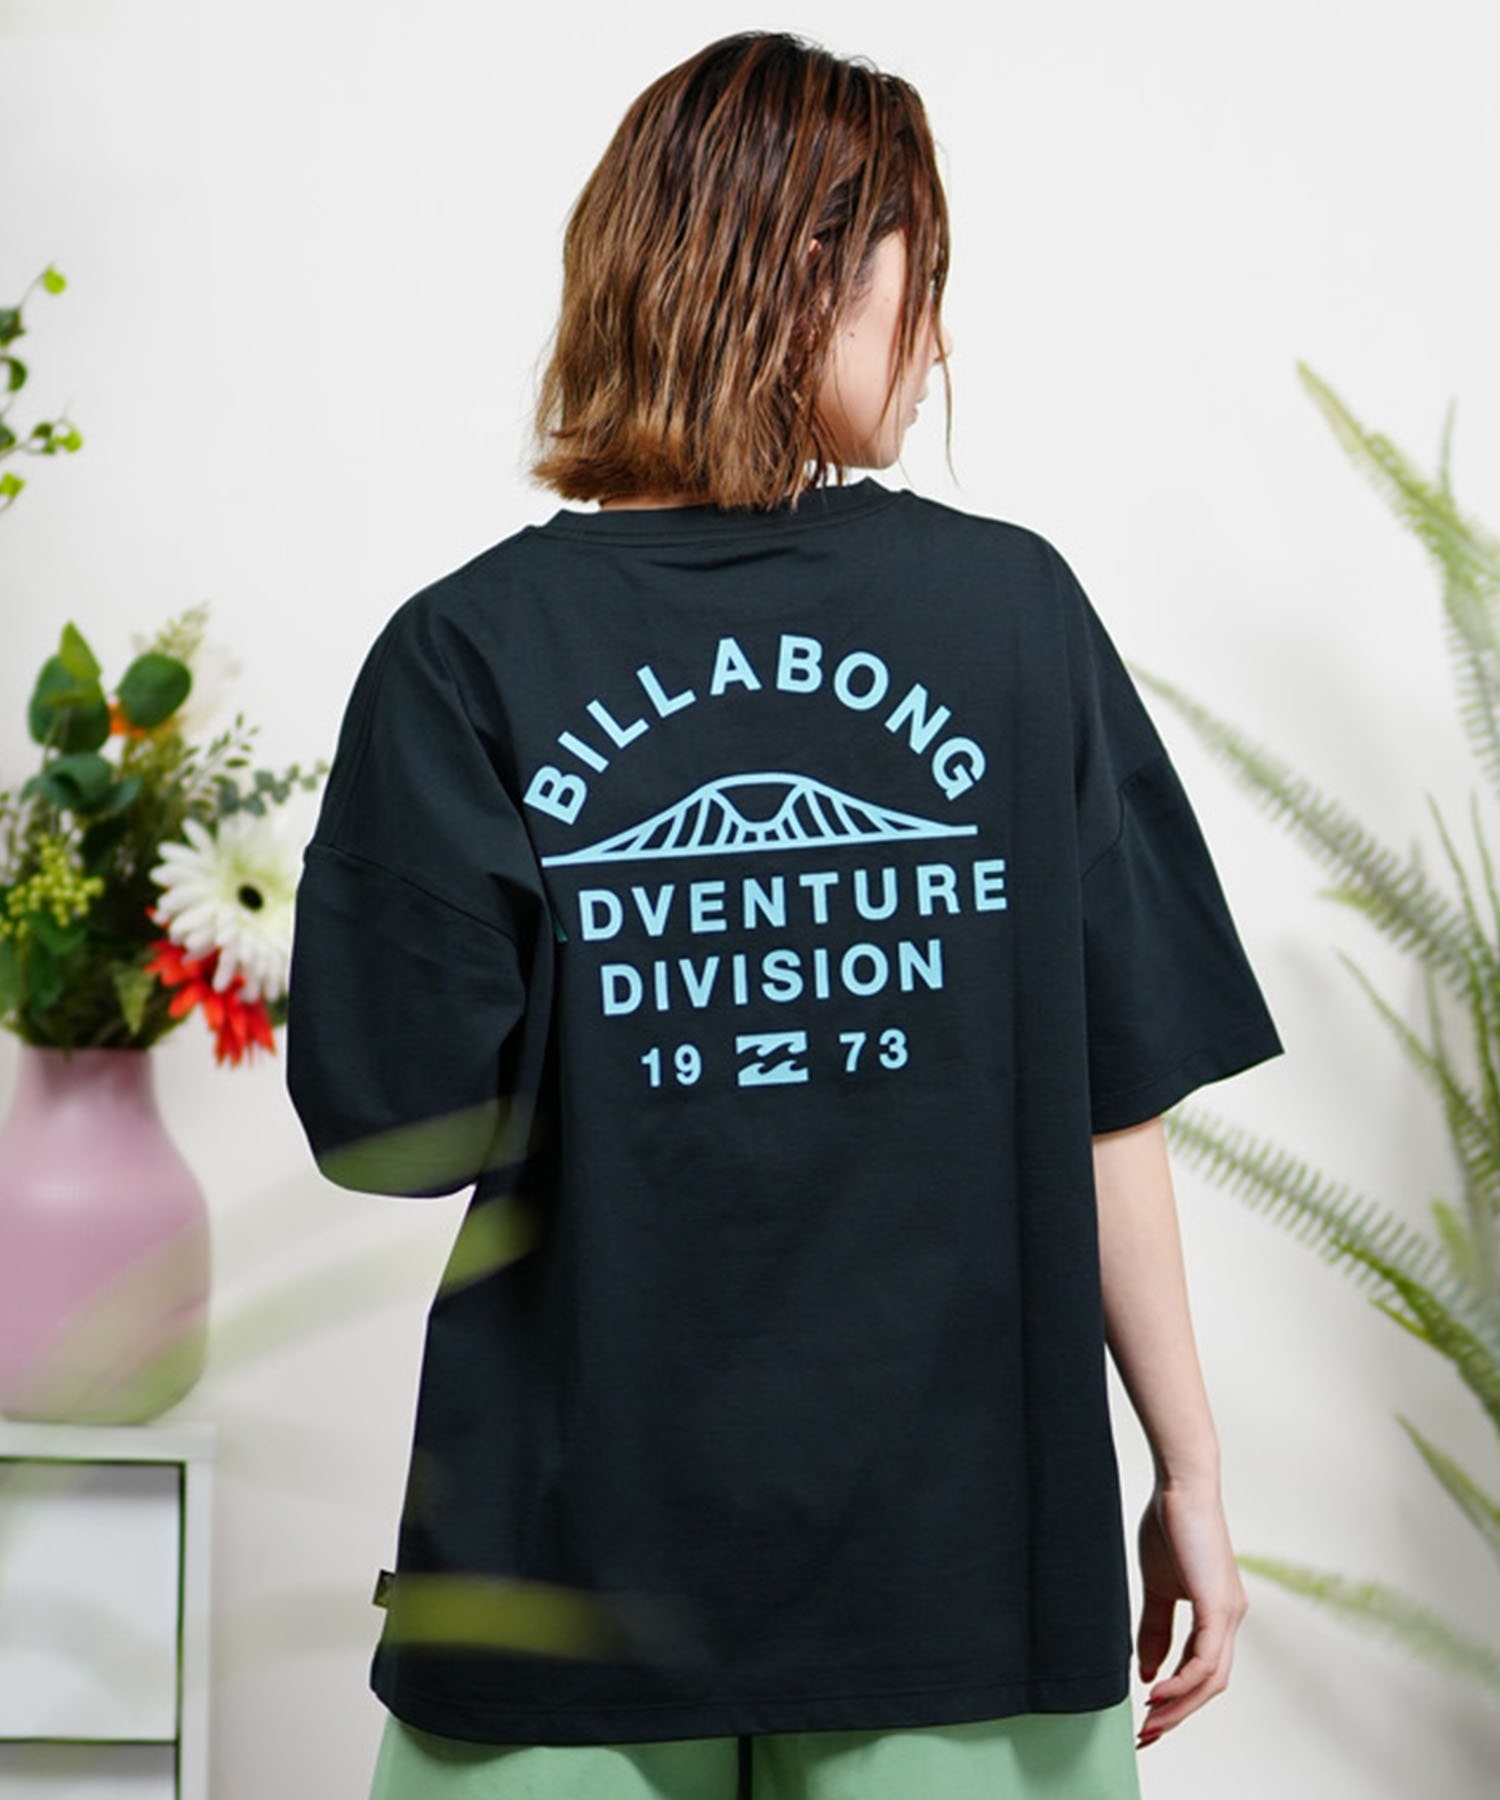 BILLABONG ビラボン レディース Tシャツ ラッシュガード ユーティリティー 水陸両用 UVケア ムラサキスポーツ限定 BE013-223(WHT-M)